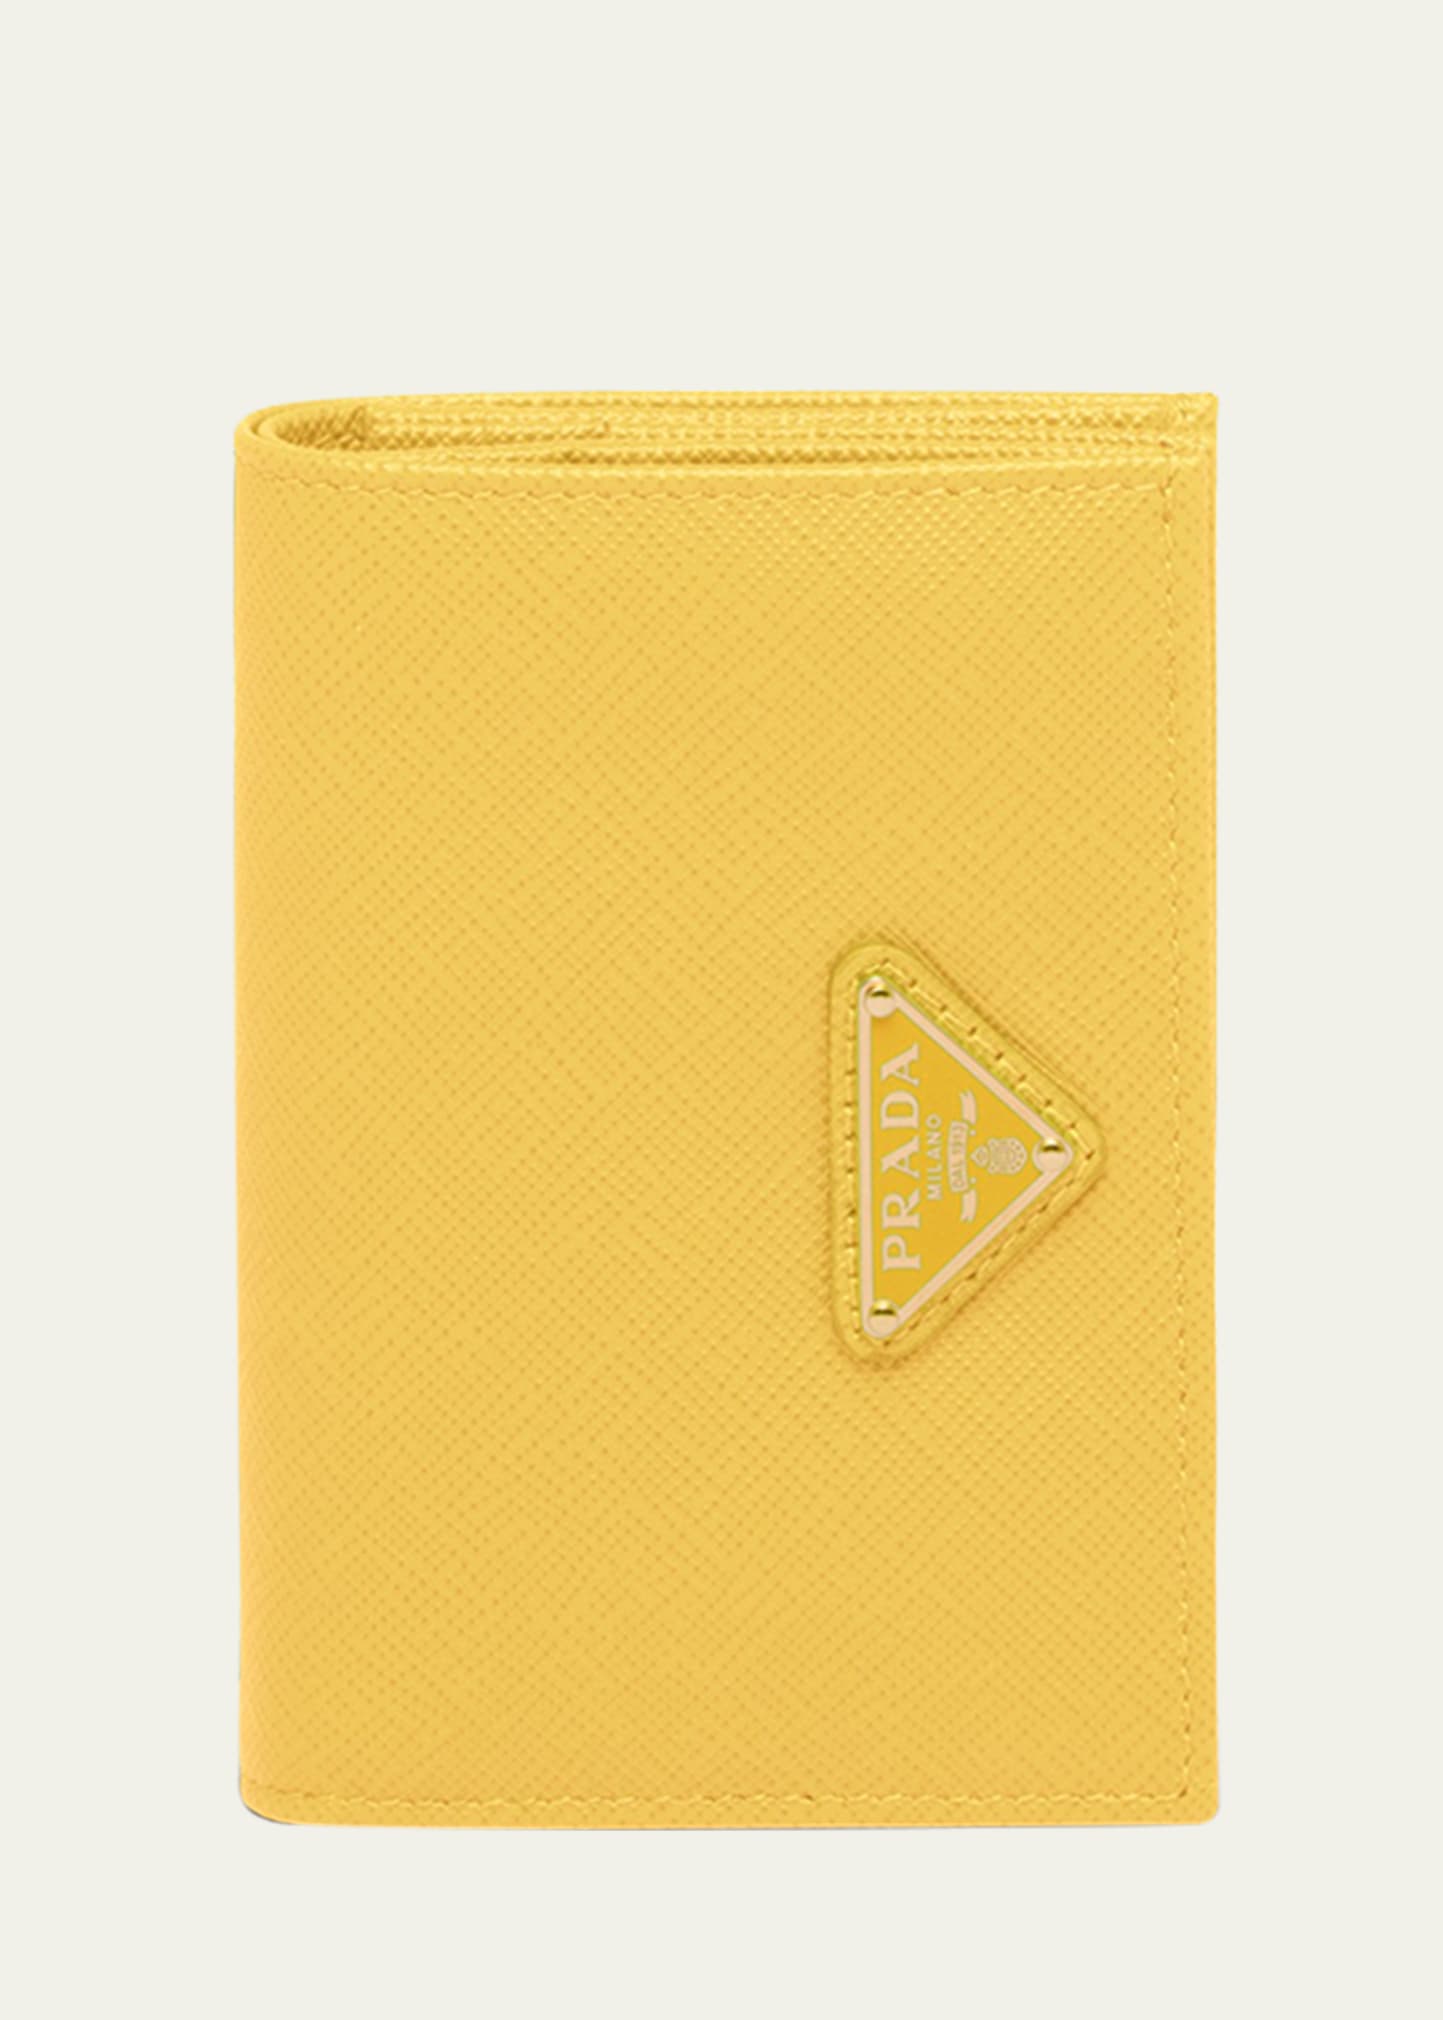 Prada Small Saffiano Leather Wallet In F0377 Sole